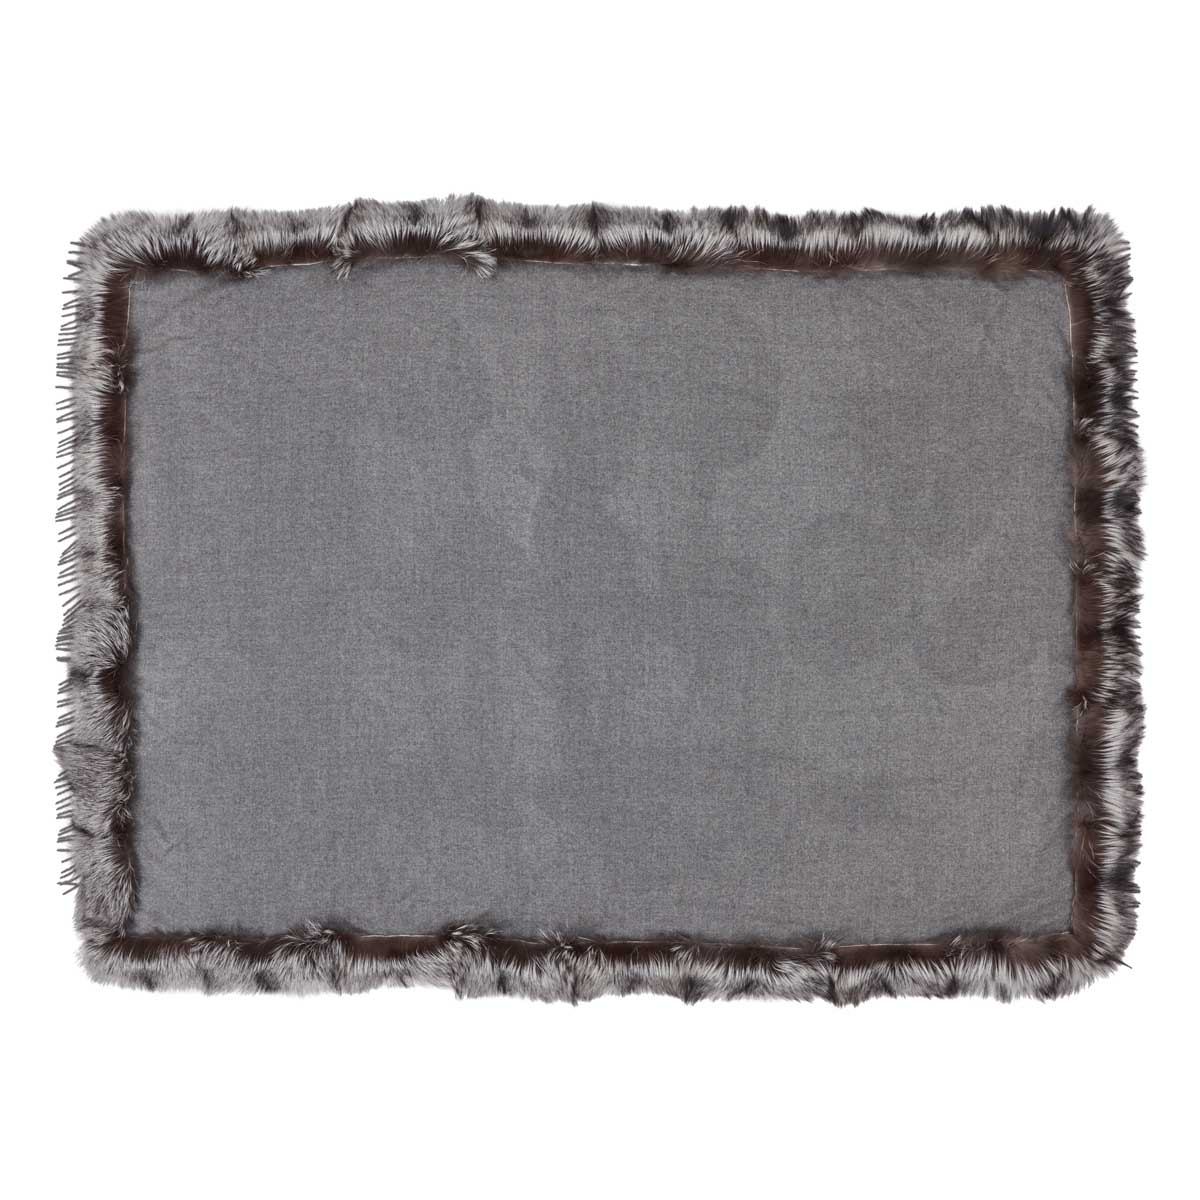 Cobertor | Caxemira, raposa | 130x200 cm.